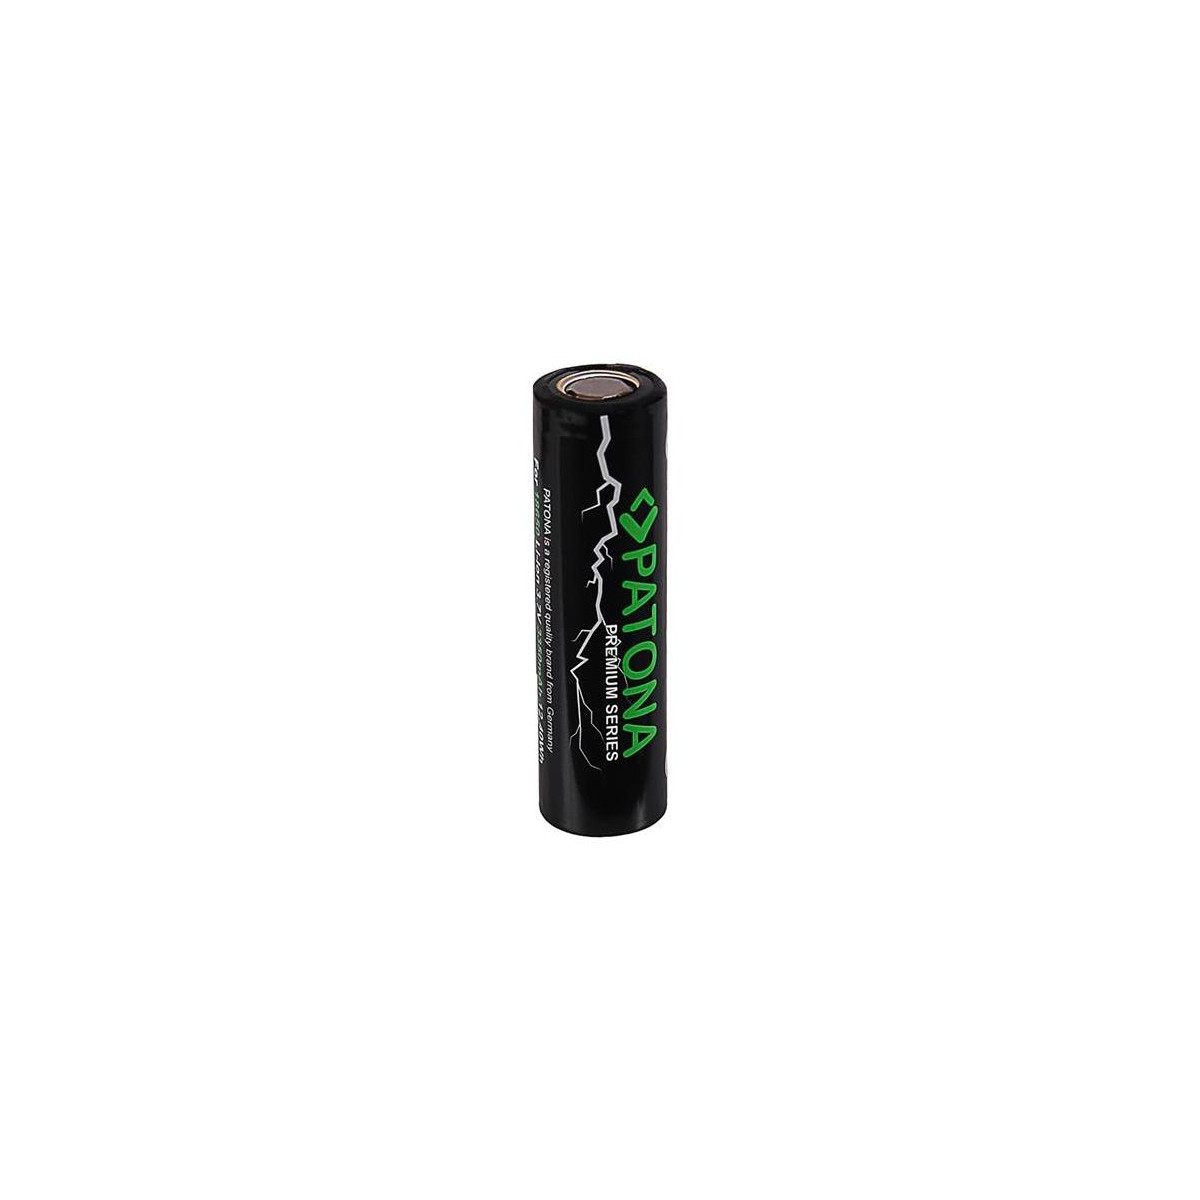 More about Baterie nabíjecí 18650 3350mAh Li-Ion 3,7V Premium PATONA PT6515